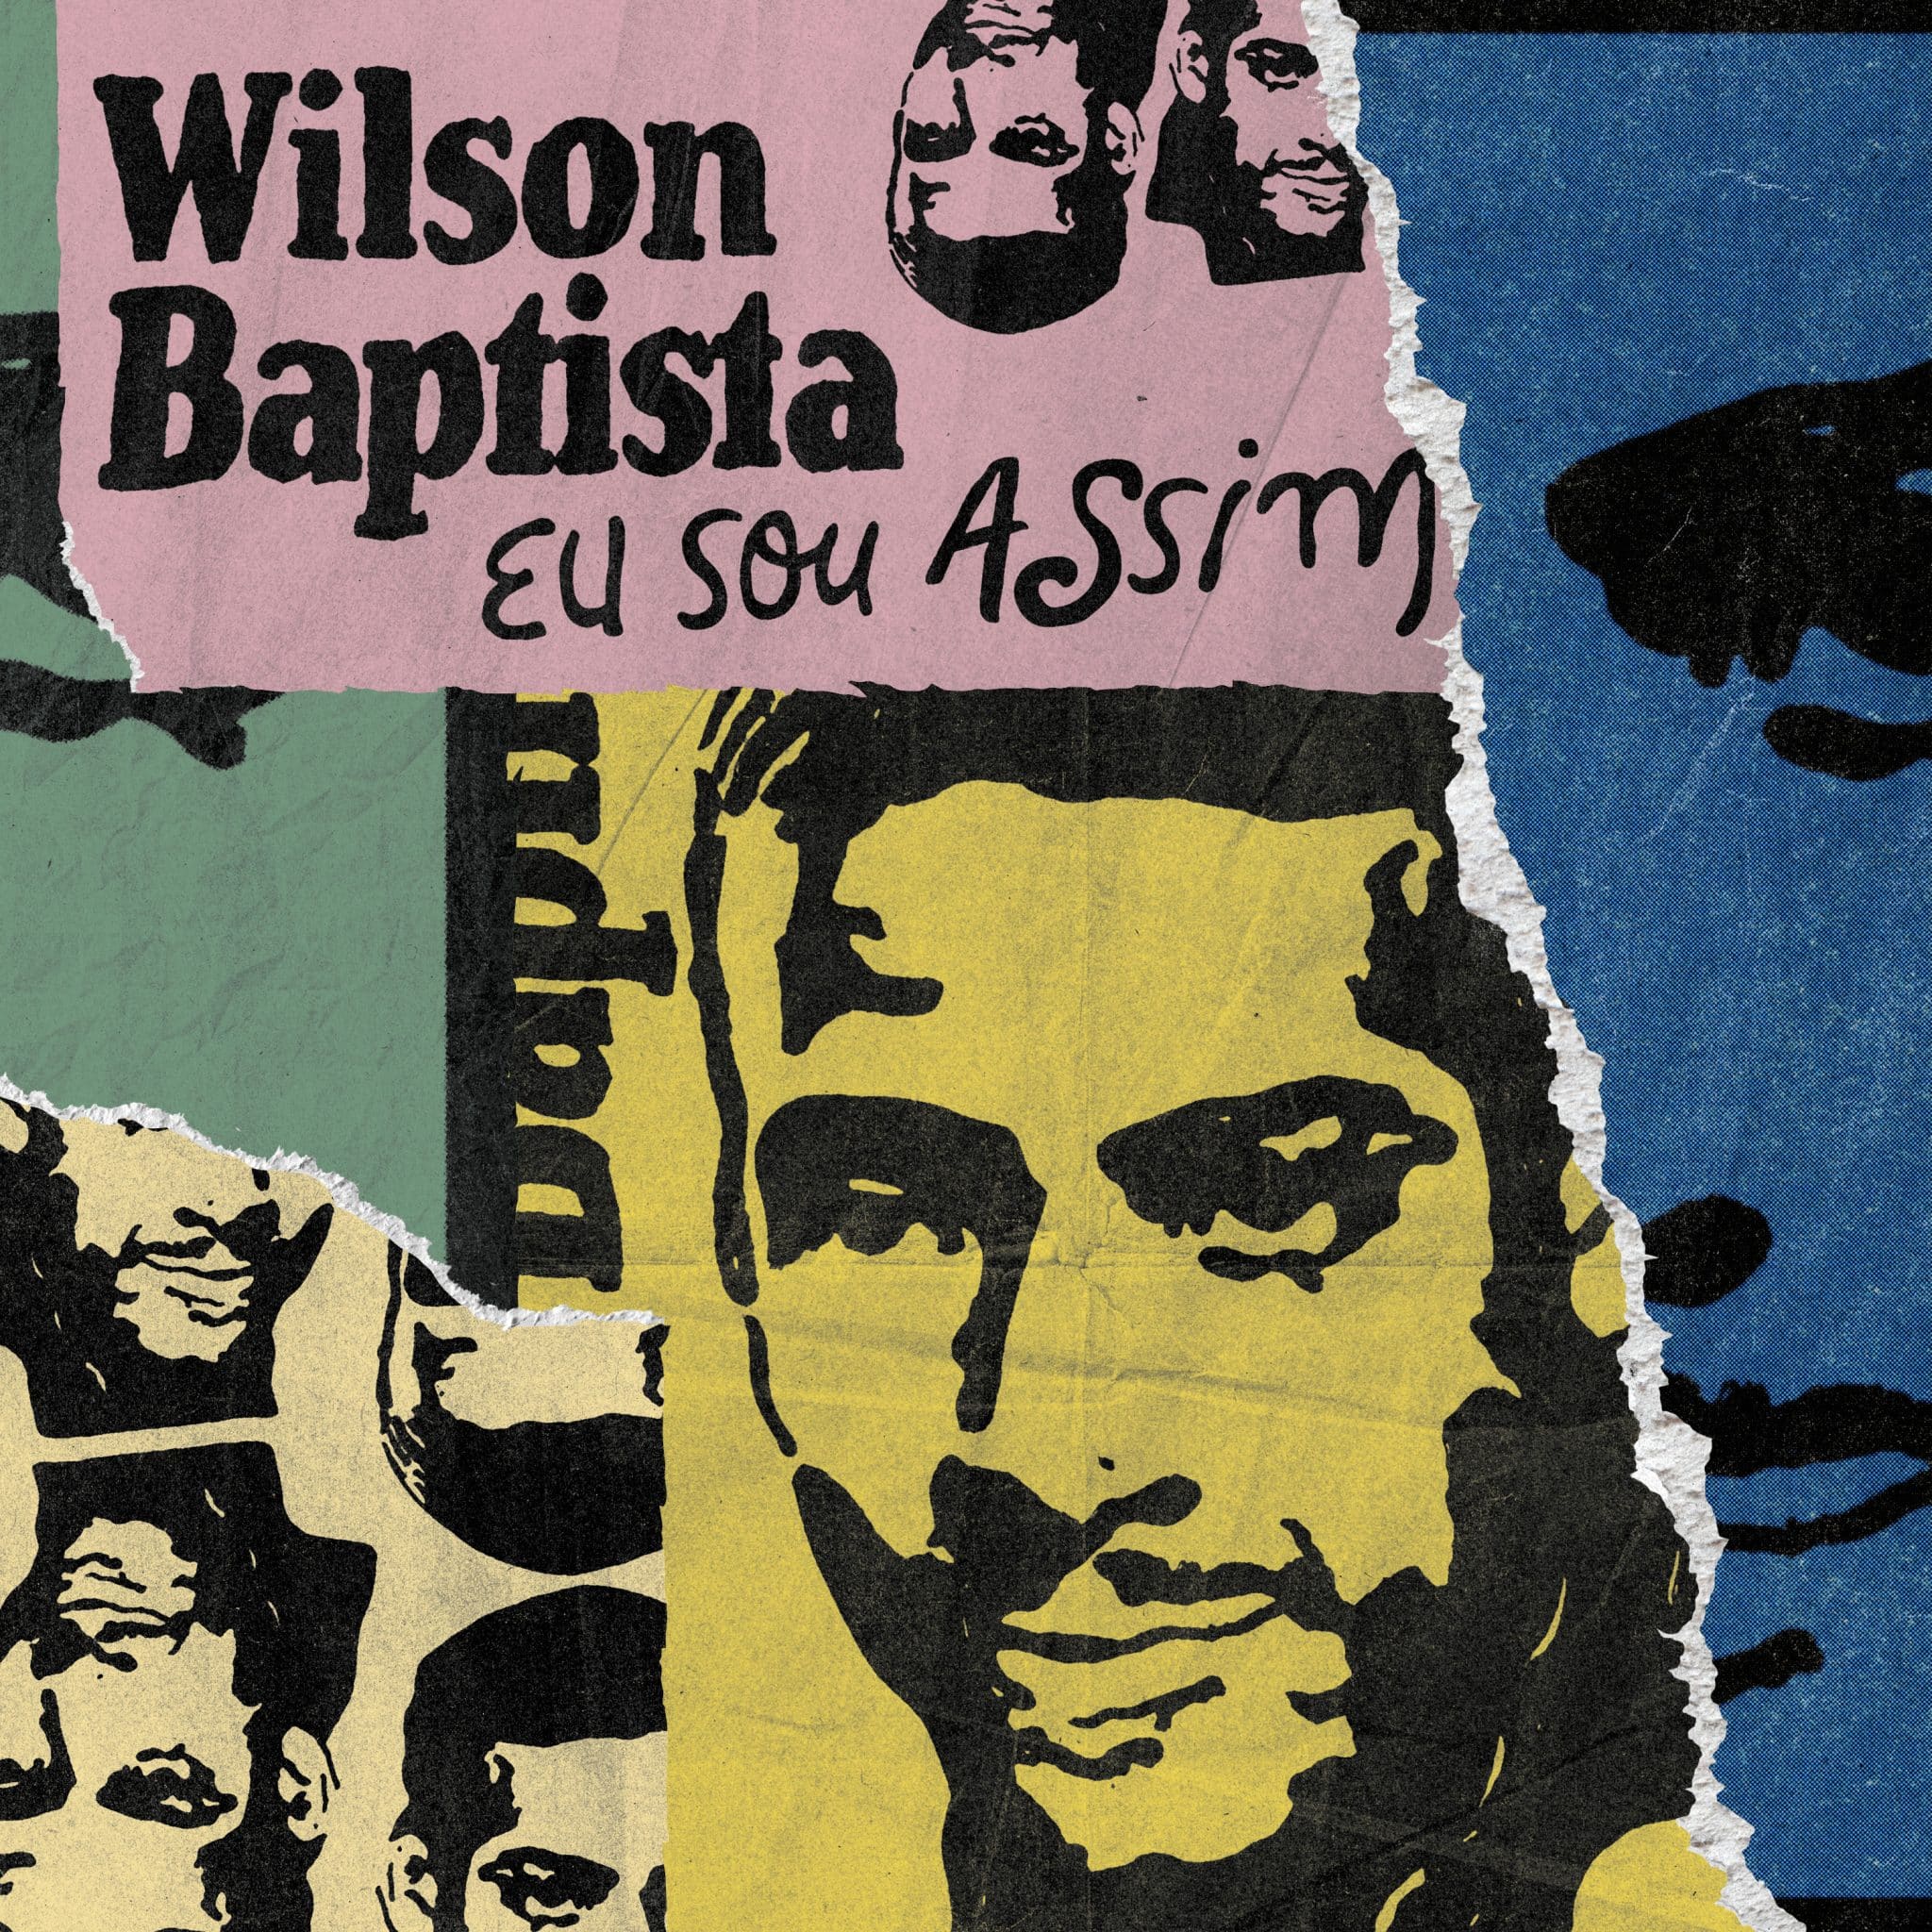 revistaprosaversoearte.com - 'Eu sou assim', disco duplo em homenagem ao sambista Wilson Baptista, pelo selo Sesc